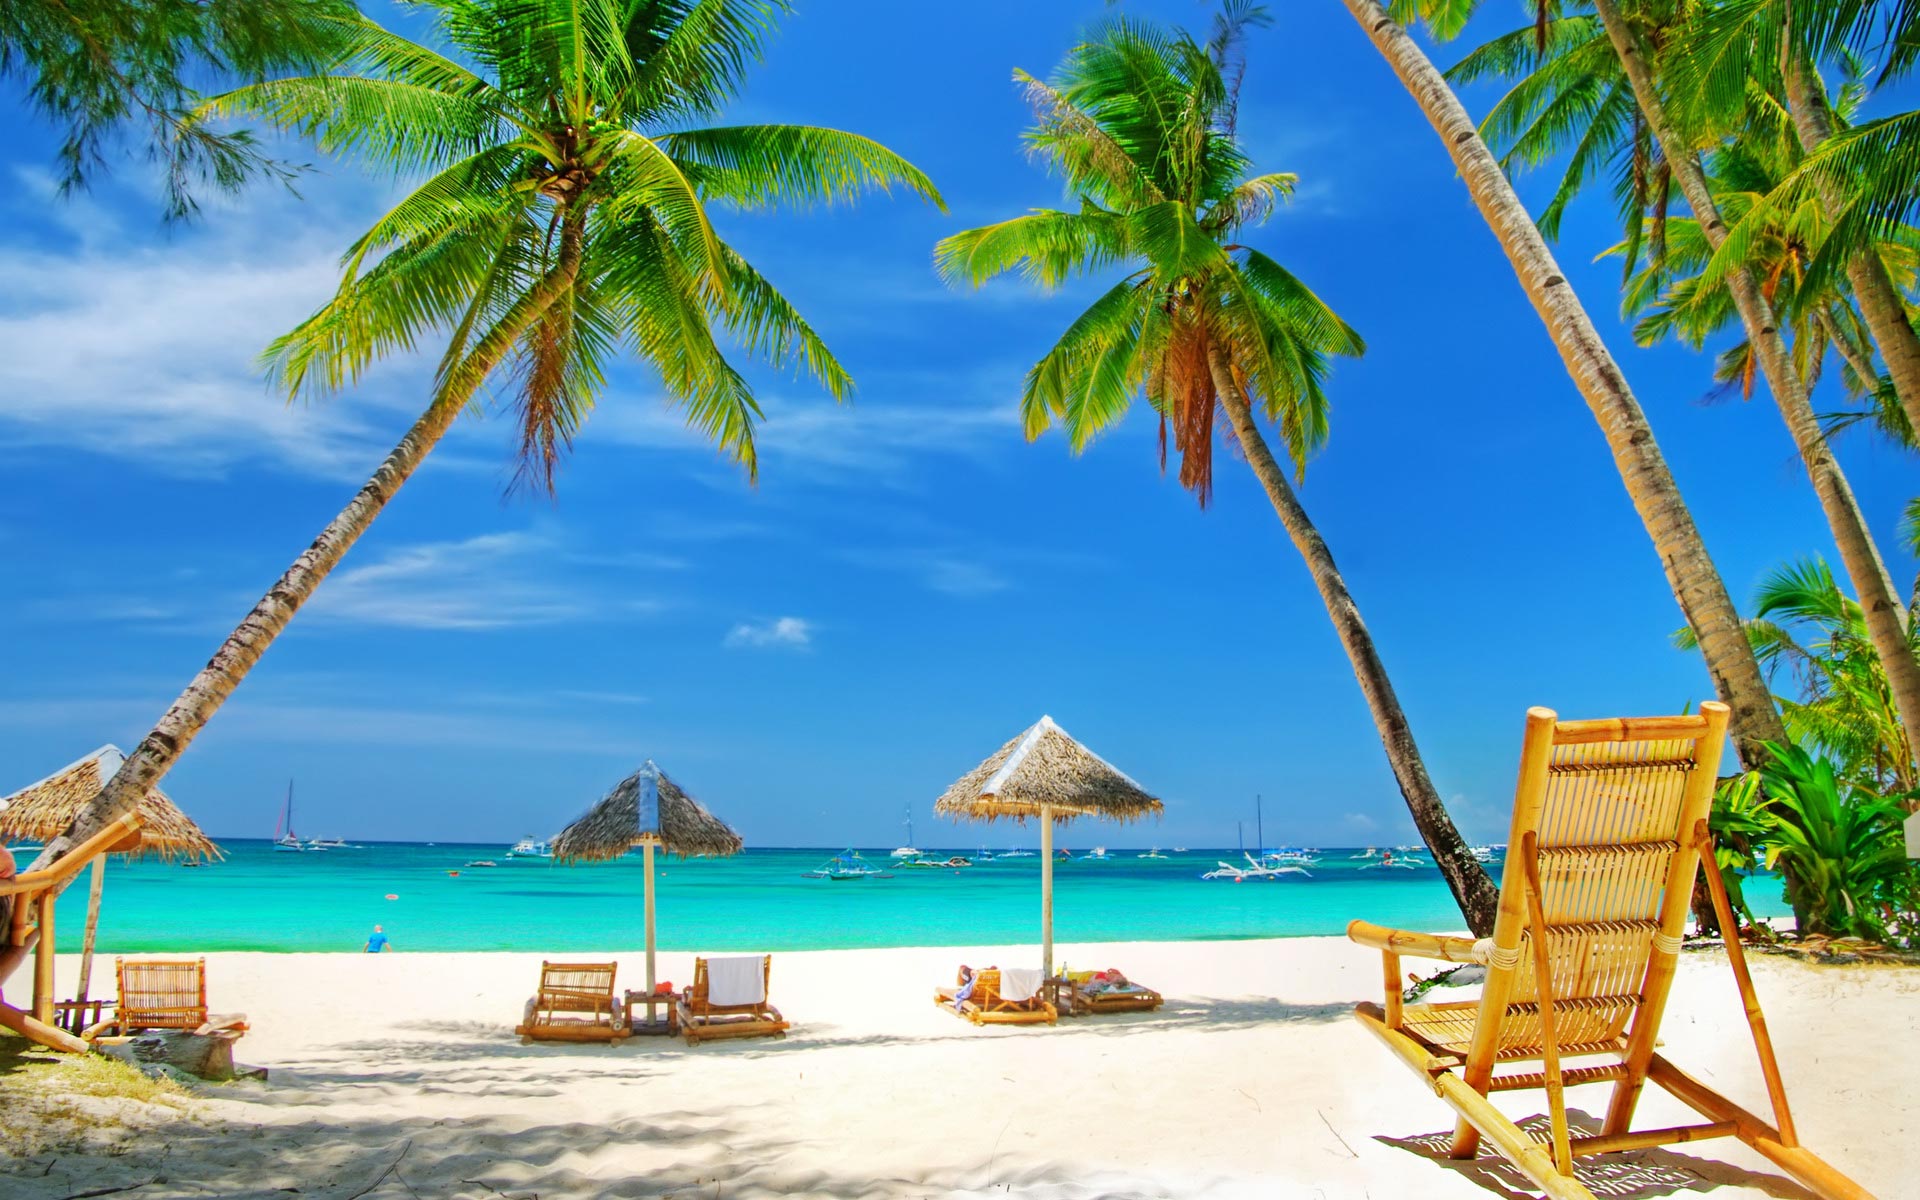 Tropical beach | Urlaub | Pinterest | Tropical beaches, Beach and ...